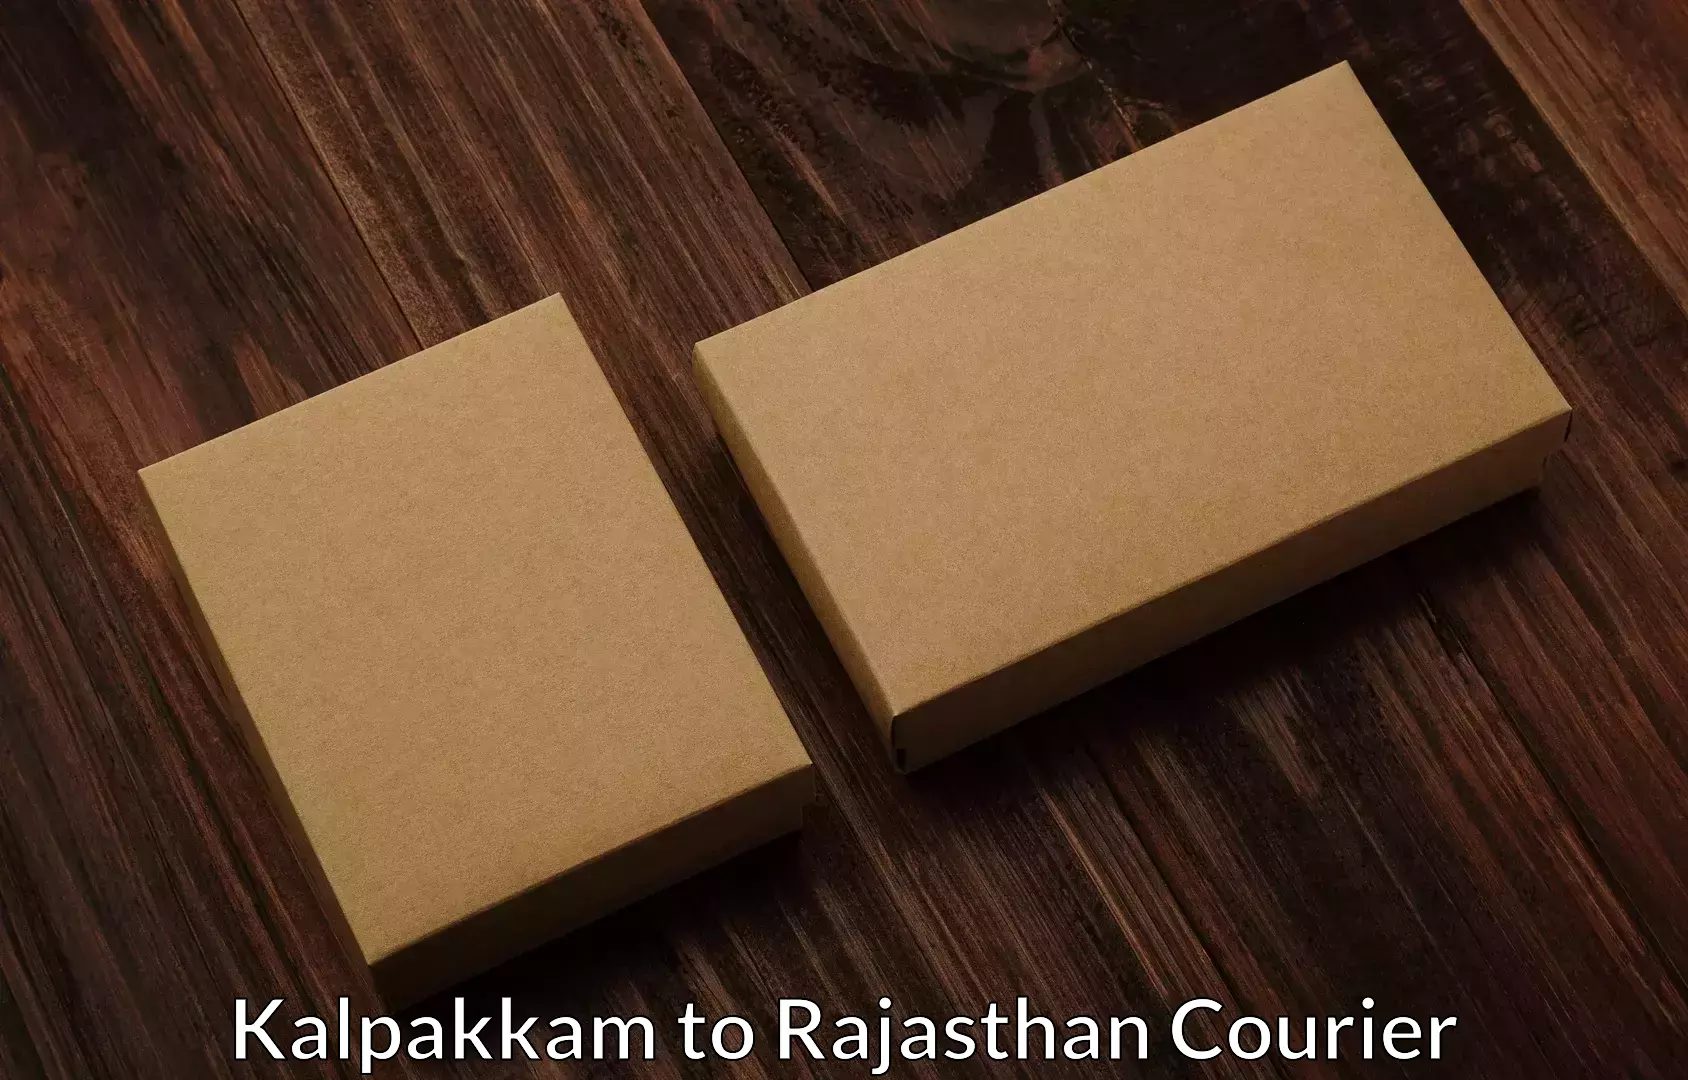 Furniture moving strategies Kalpakkam to Rajasthan